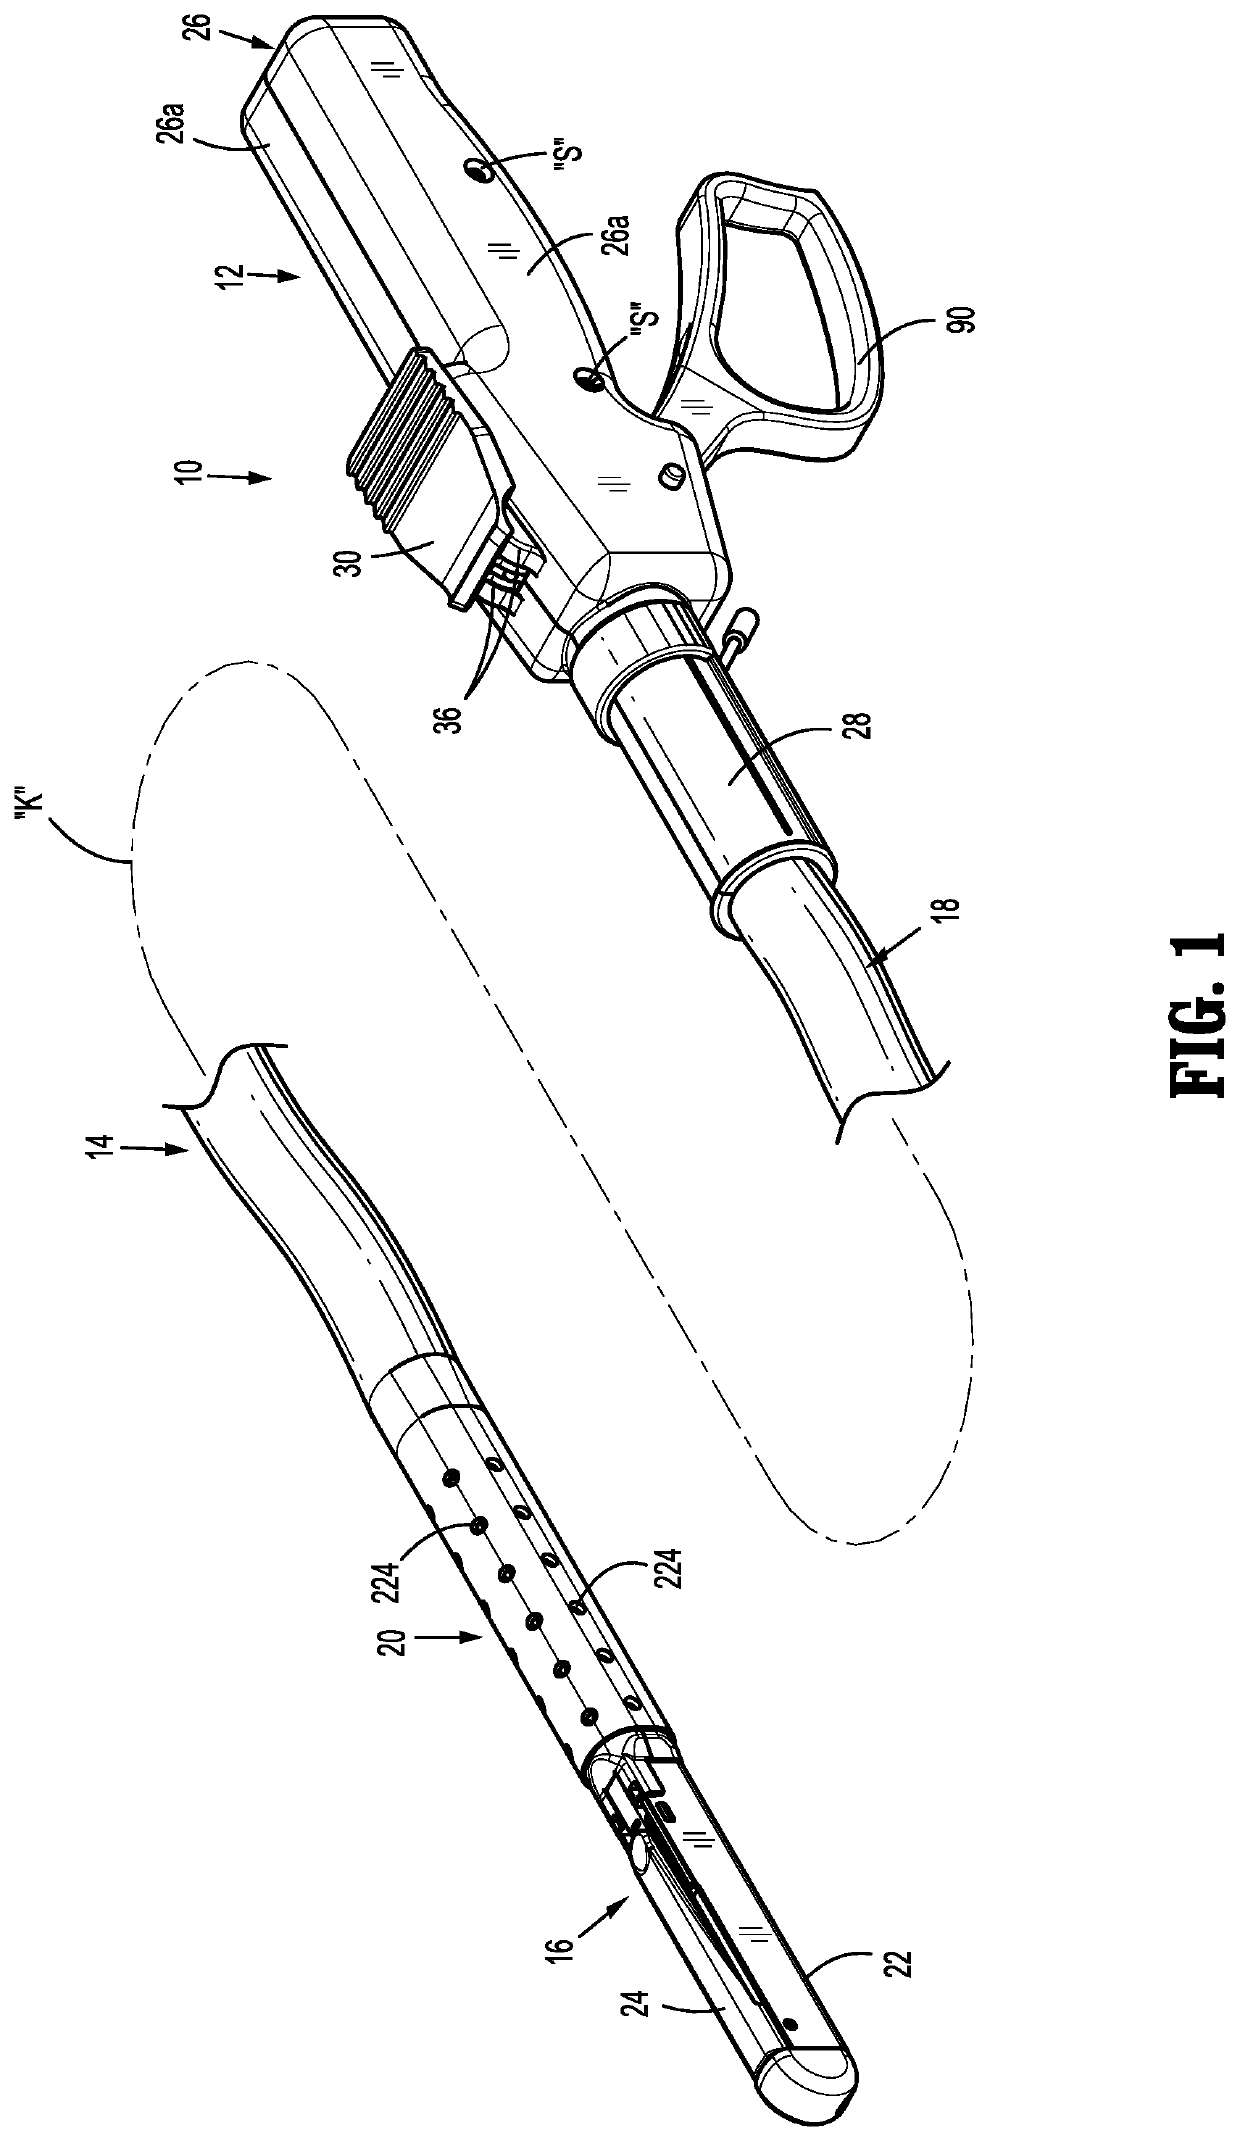 Surgical fastener apparatus